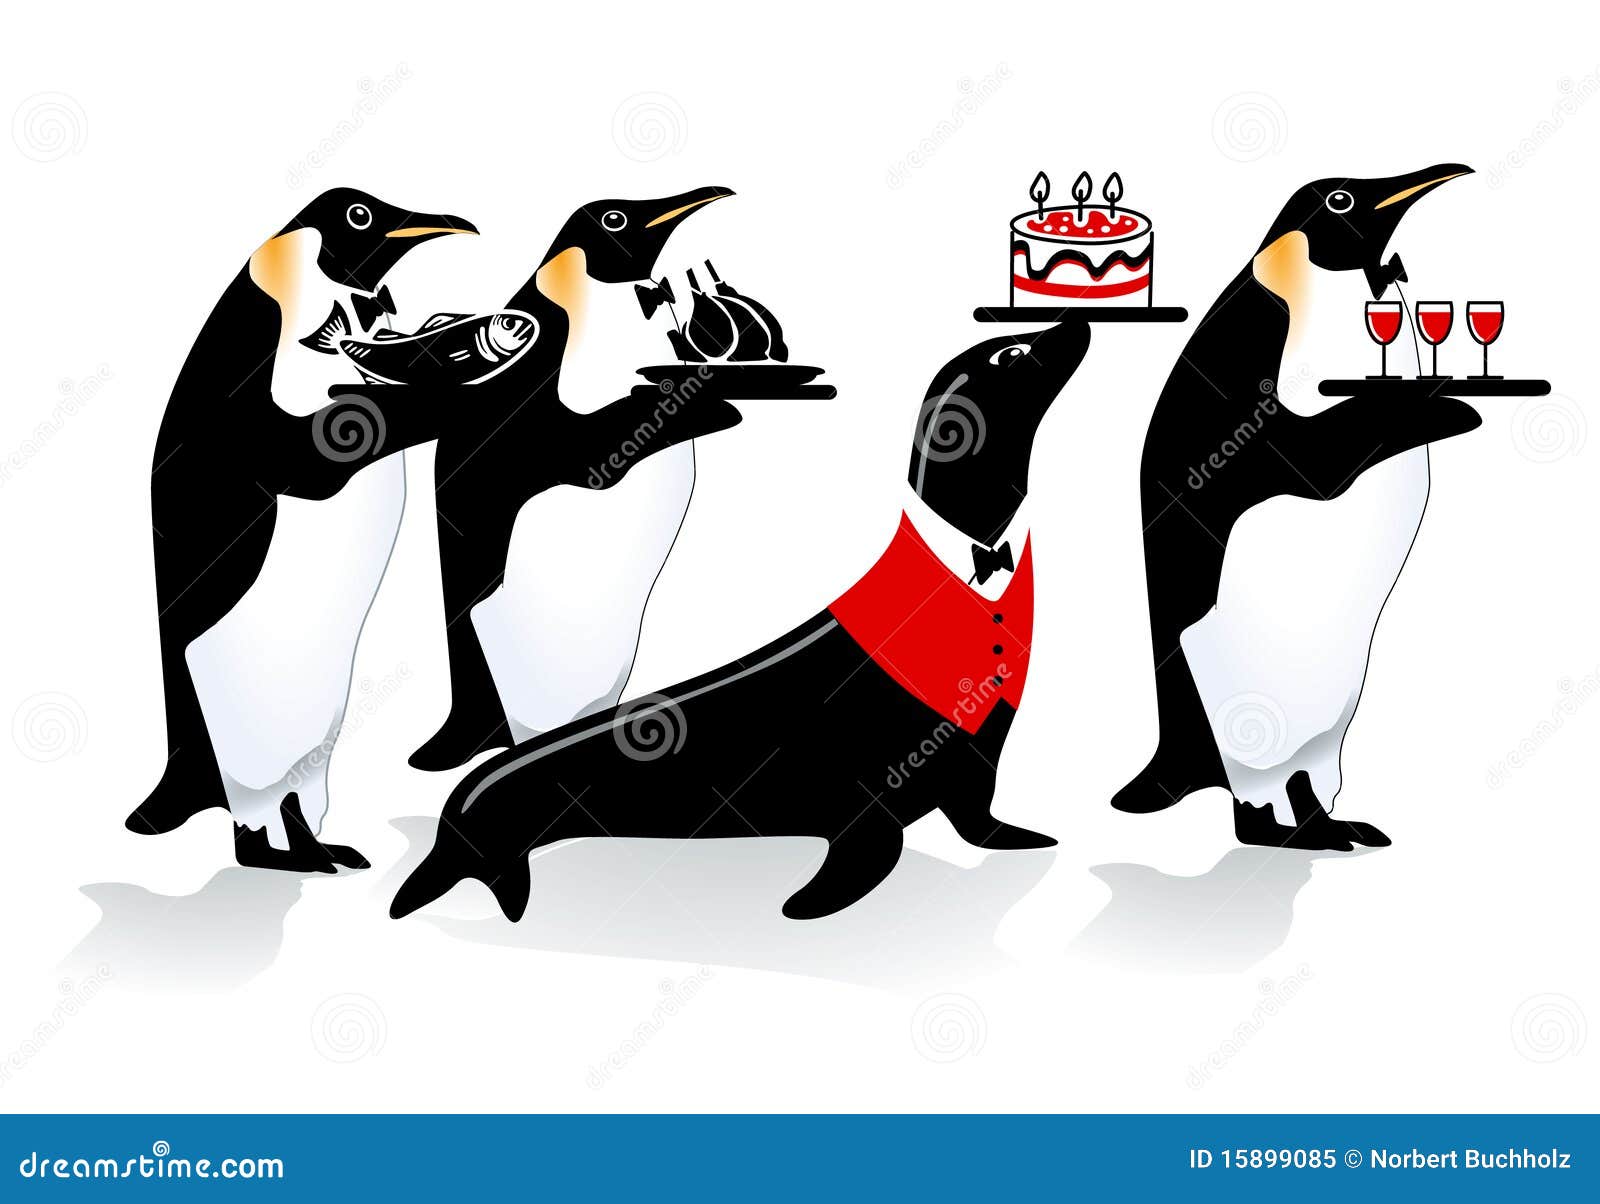 penguin birthday